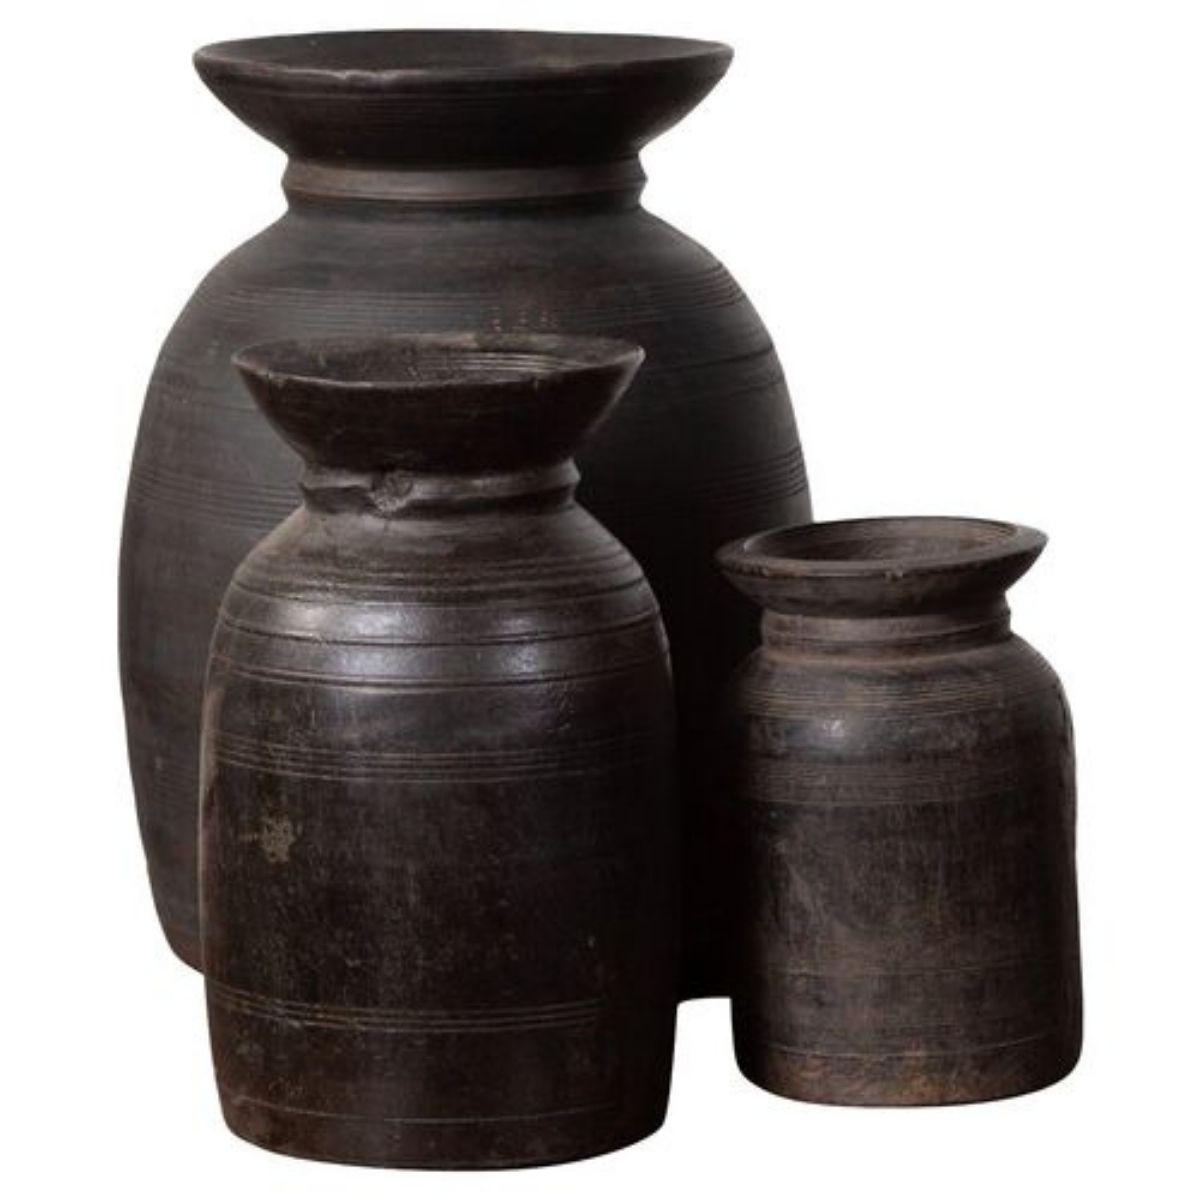 Antike nepalesische Ghee-Töpfe aus Holz in verschiedenen Formen und Größen, die in Sets von drei oder fünf Stück verkauft werden. Diese äußerst dekorativen Holzkrüge setzen in jedem Raum tolle Akzente, insbesondere in der Küche, im Esszimmer oder im